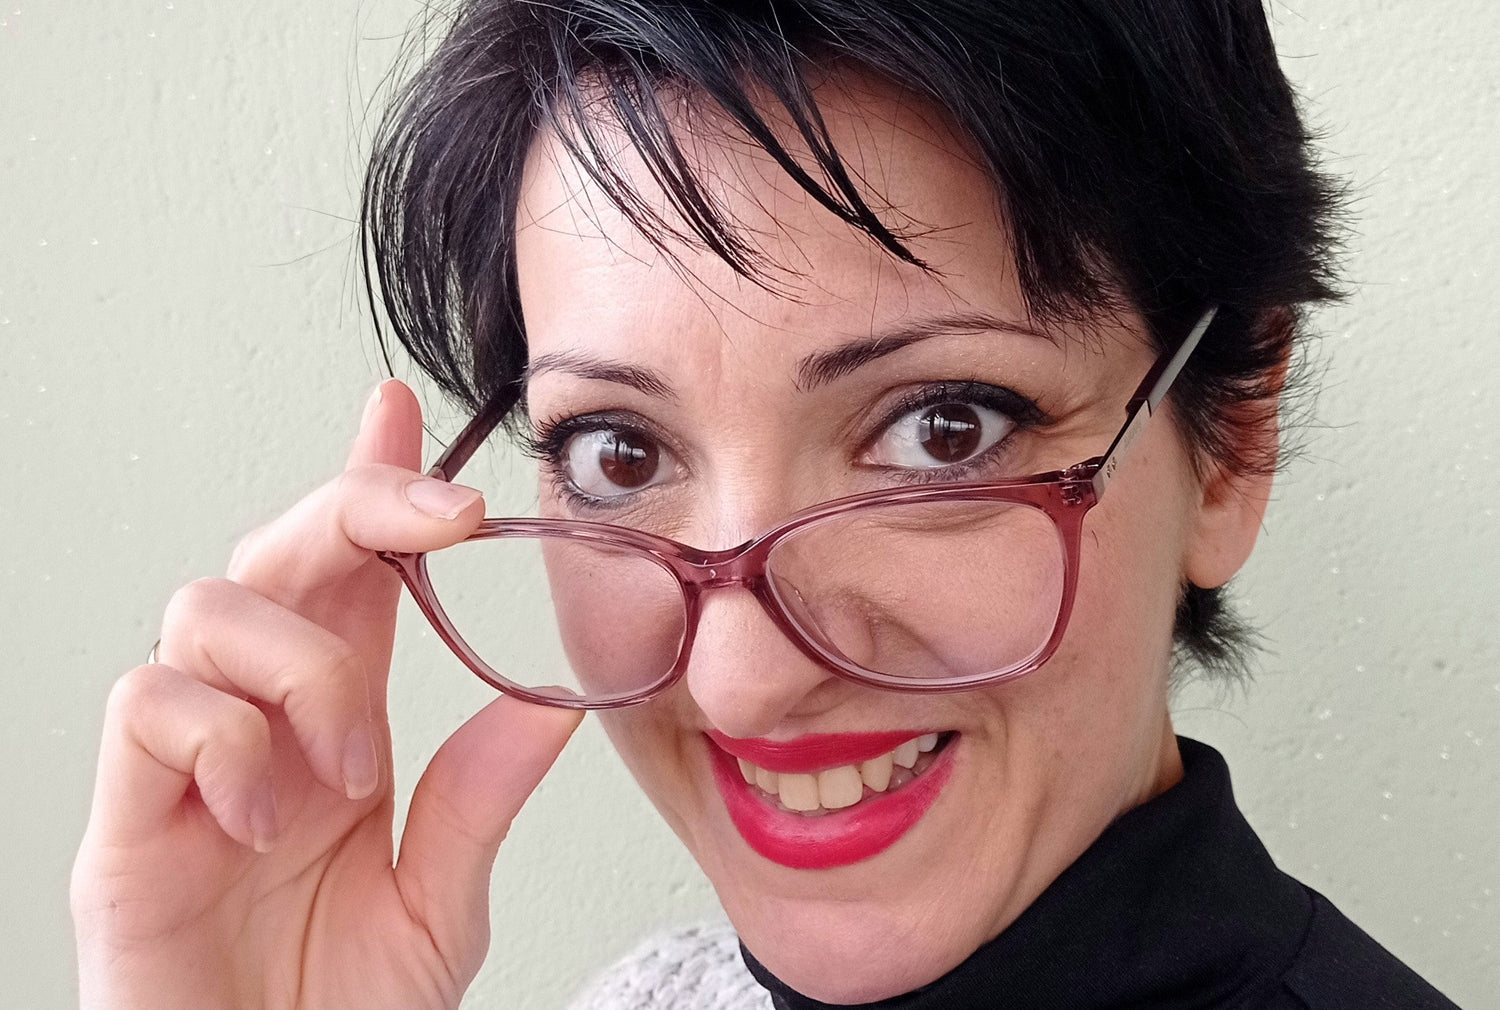 how much do zenni glasses cost? | KOALAEYE OPTICAL